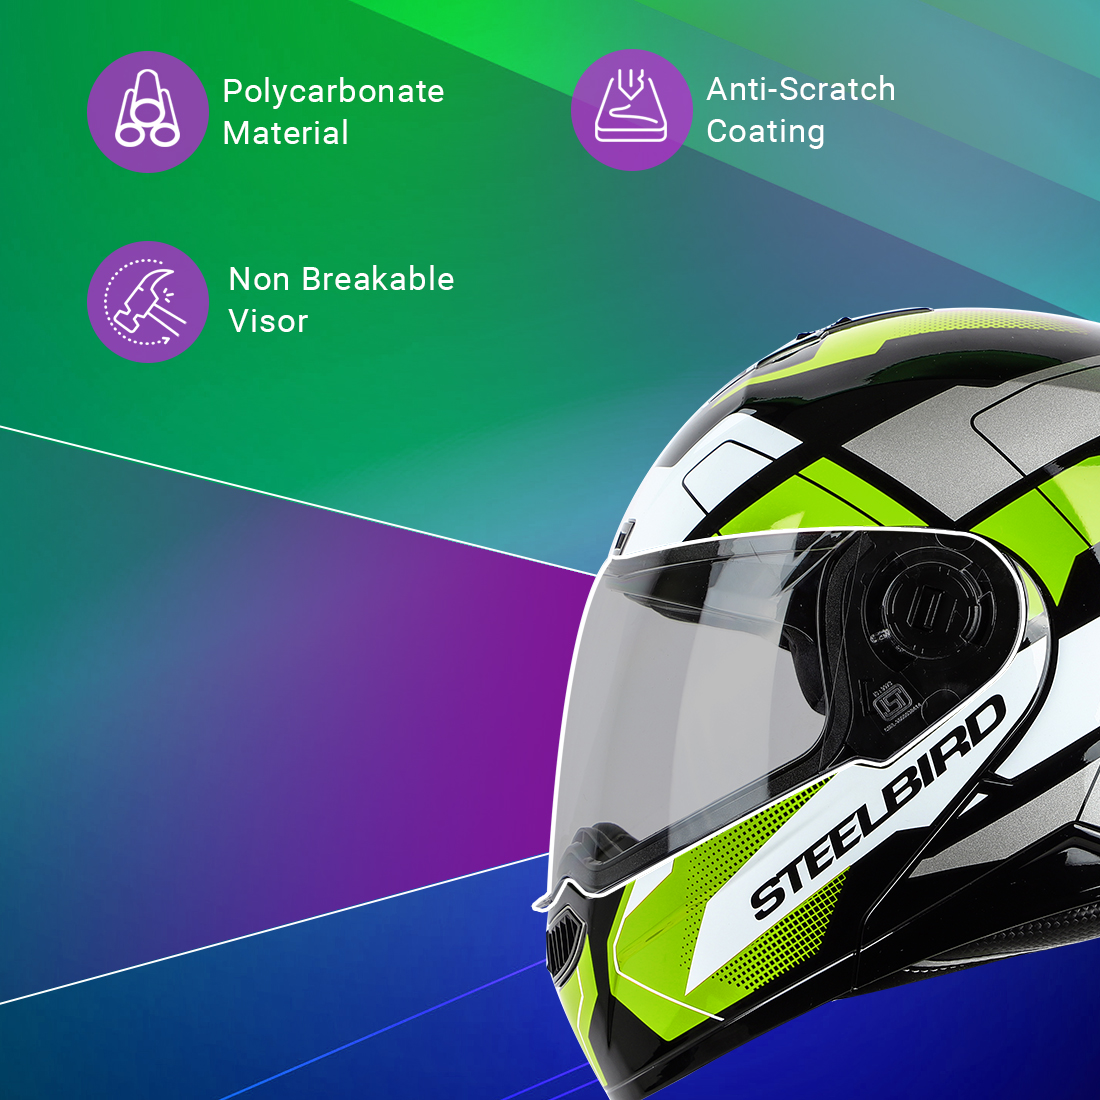 Steelbird SBA-7 Huracan ISI Certified Flip-Up Helmet For Men And Women (Matt Black Neon With Clear Visor)